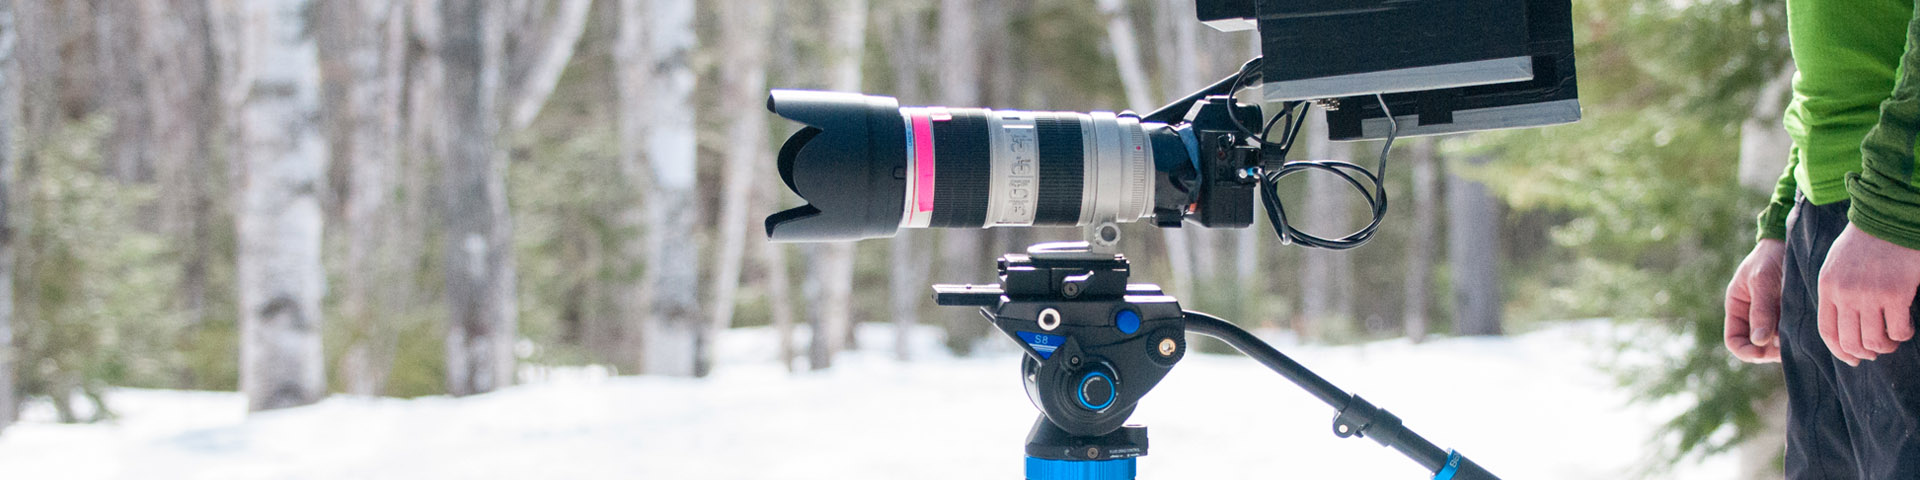 Équipement de photo et vidéo professionel en hiver, en forêt. 